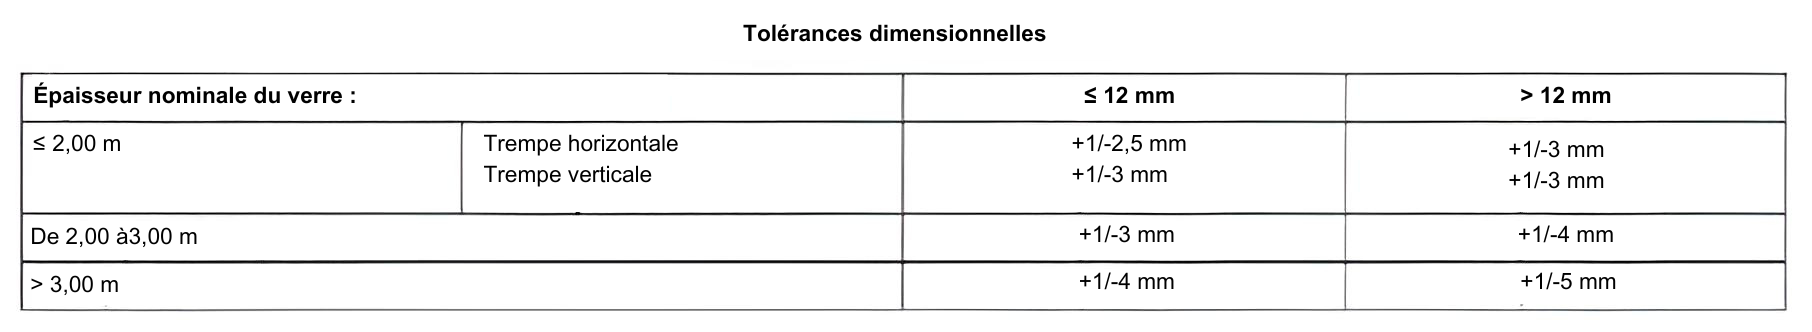 tableau des tolérances dimensionnelles